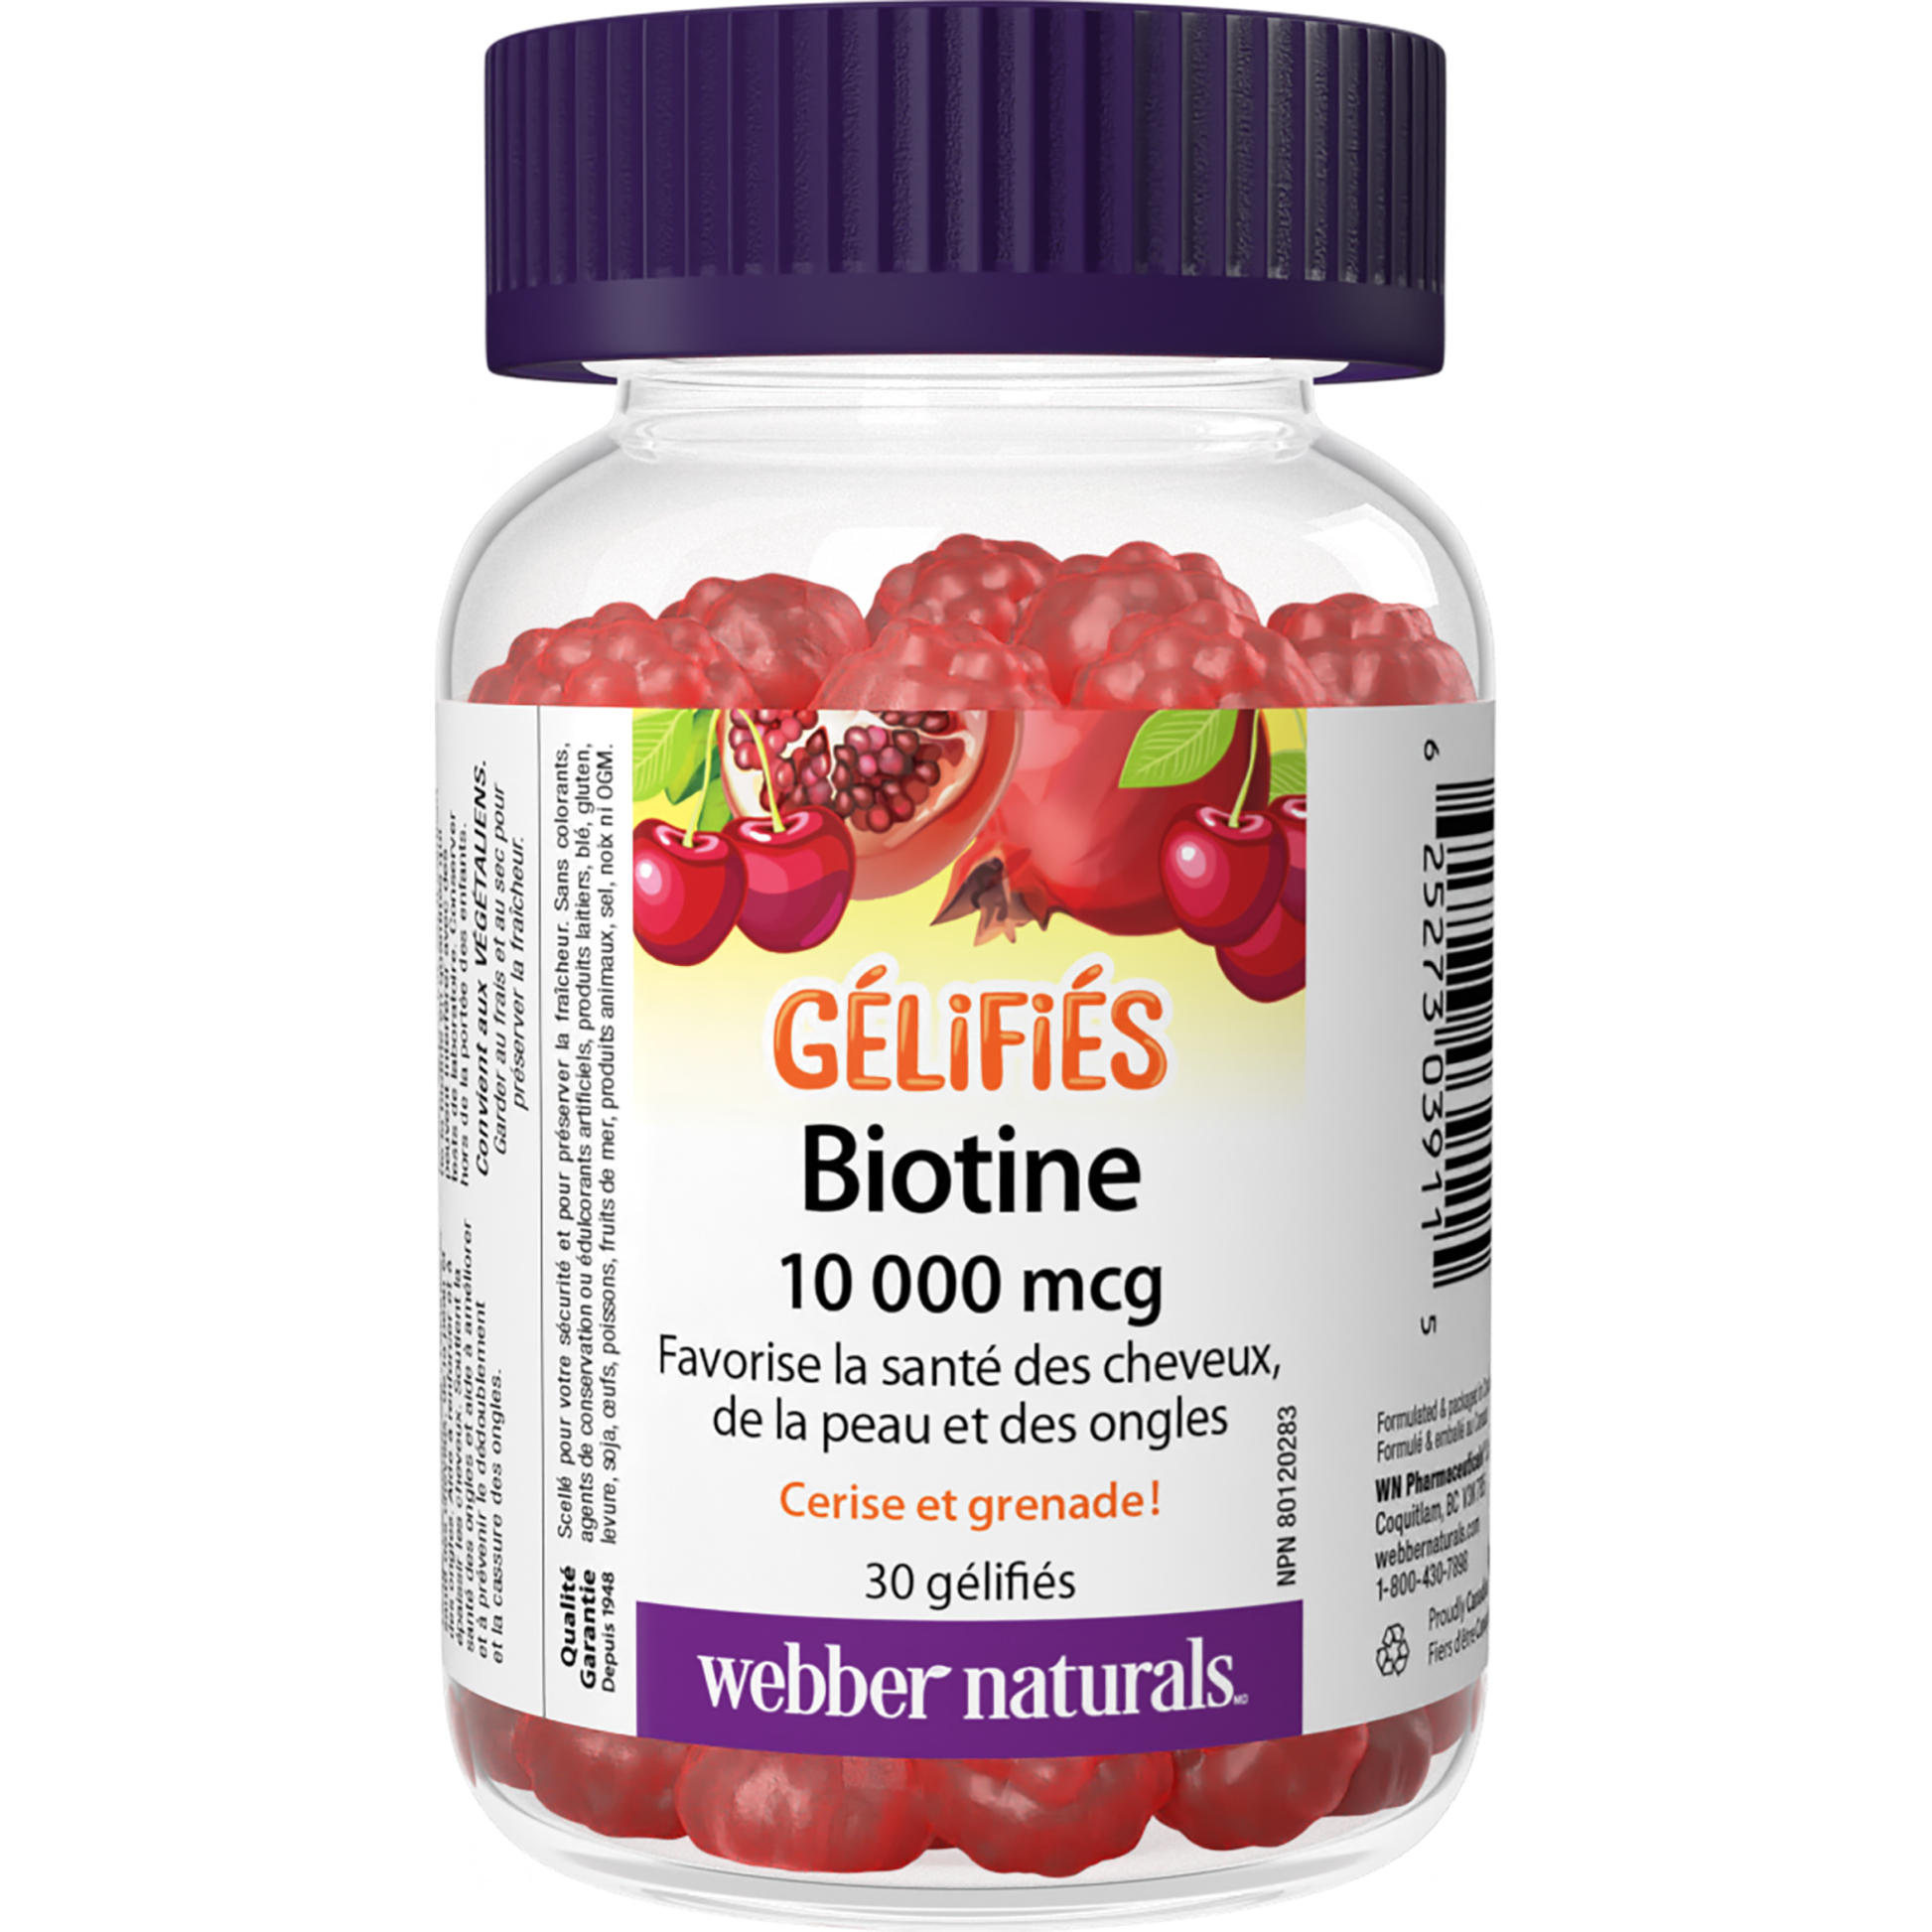 Biotine 10 000 mcg gélifiés for Webber Naturals|v|hi-res|WN3911